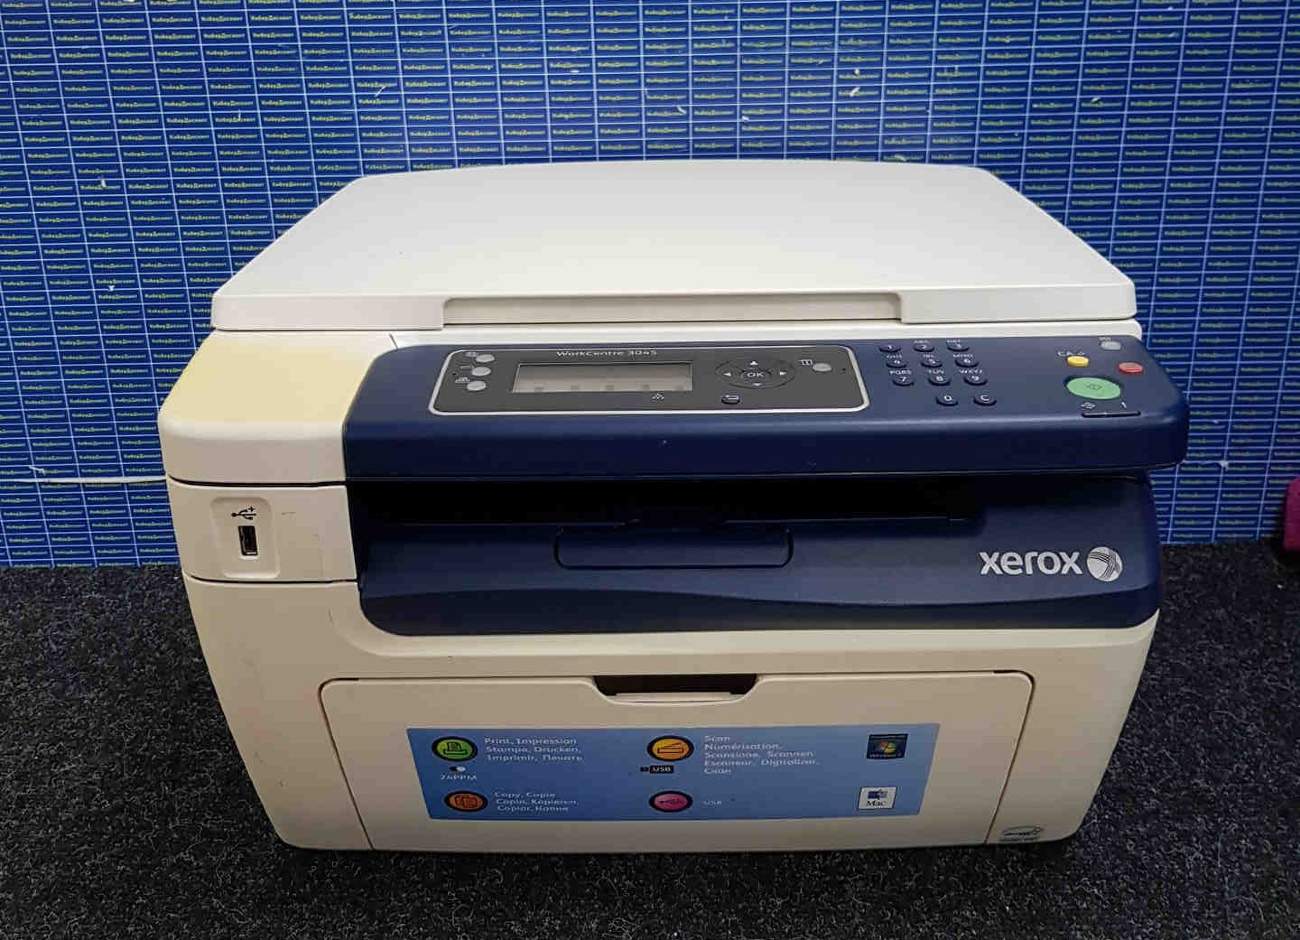 Ремонт копировальных аппаратов Xerox за 1 день в Москве на дому или в Вашем офисе!